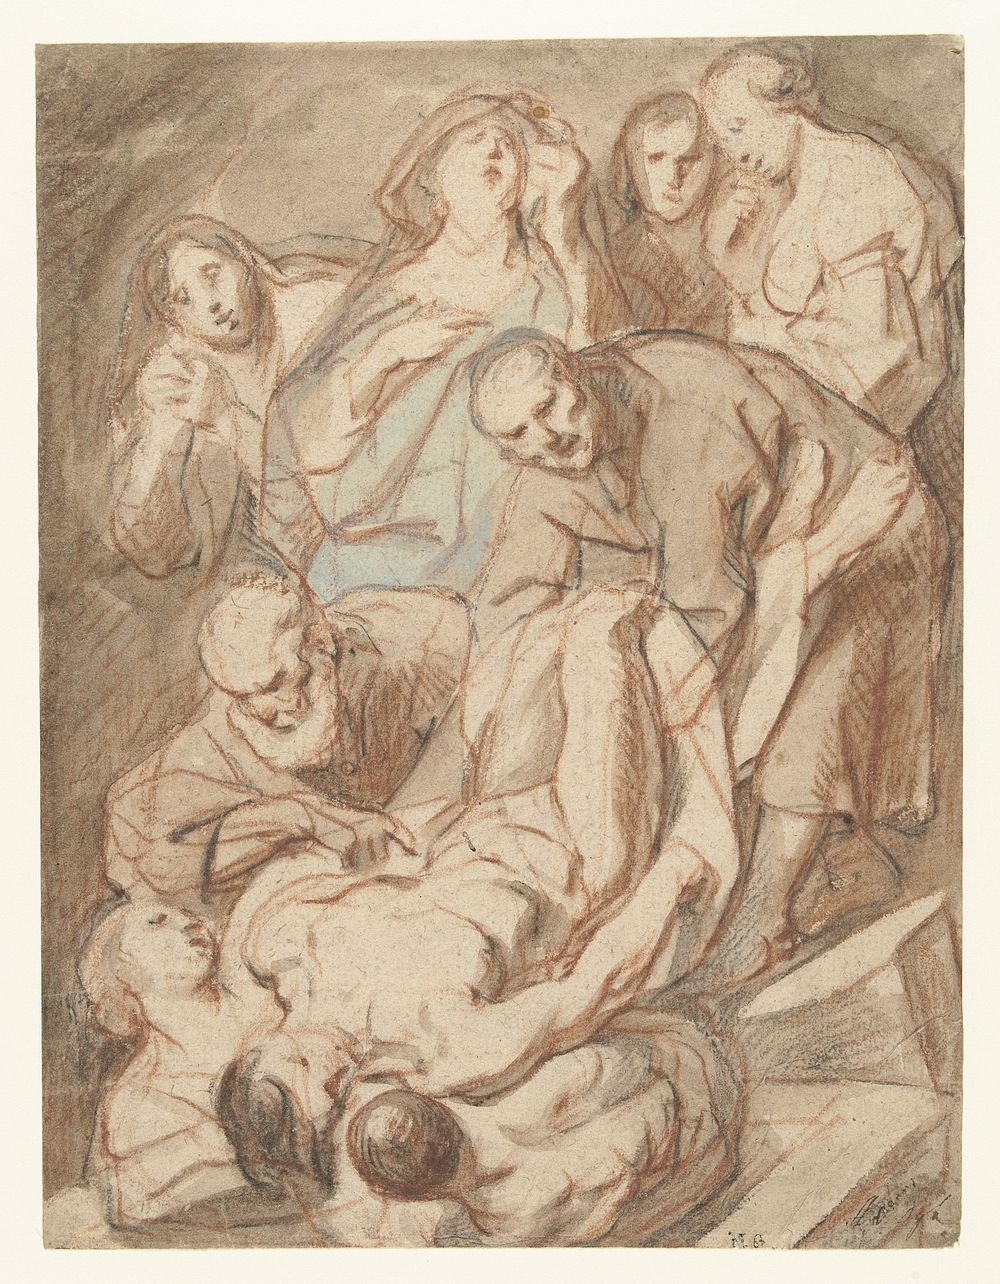 Graflegging (1660 - 1669) by Jacques Jordaens